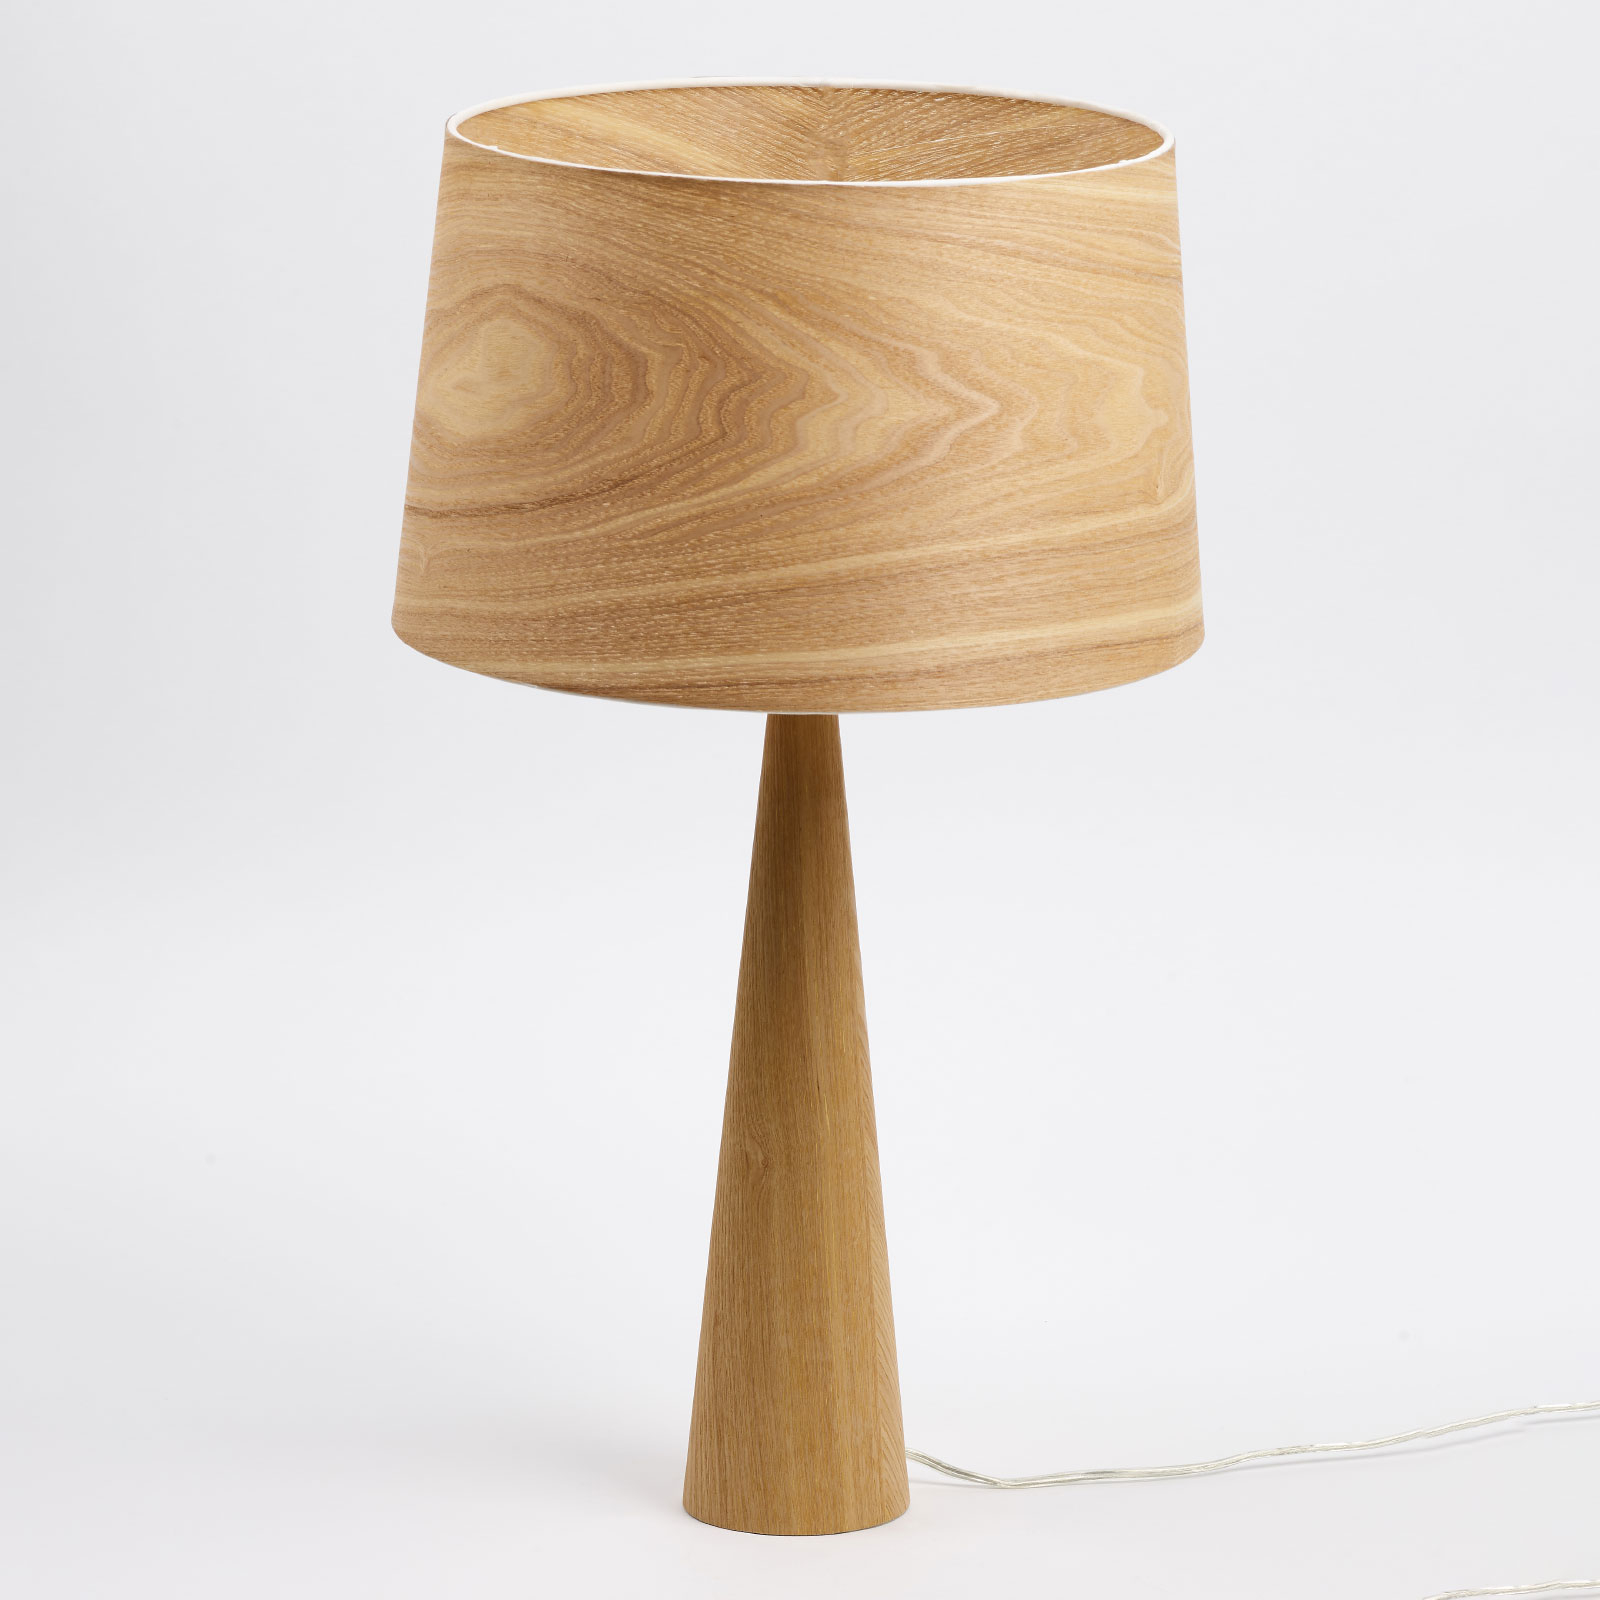 Lampa stołowa Totem LT wygląd naturalnego drewna